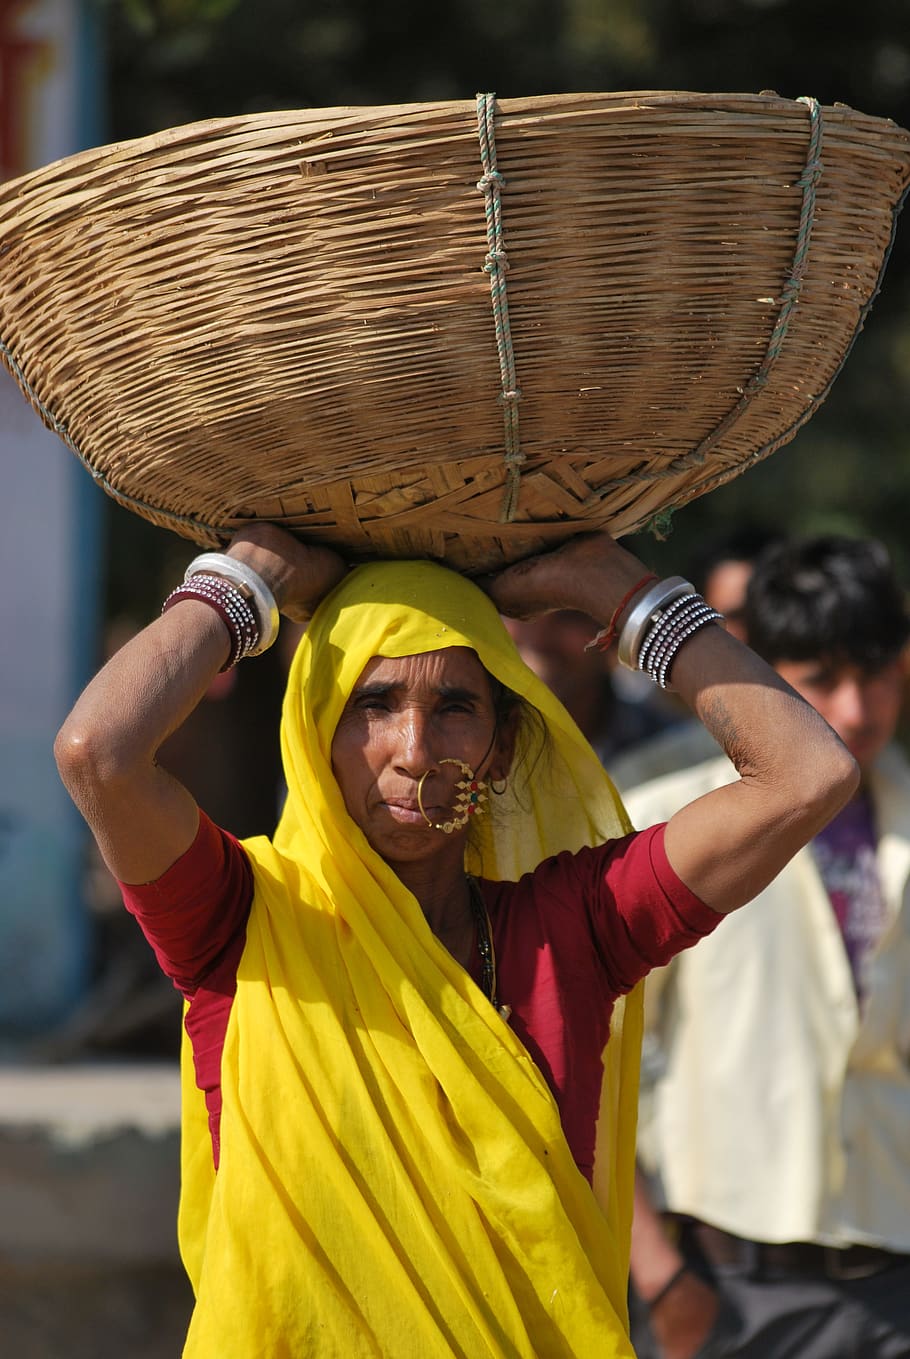 aldeano, mujer, cesta, escena del pueblo, cultural, india, colorido, joyas, personas reales, amarillo